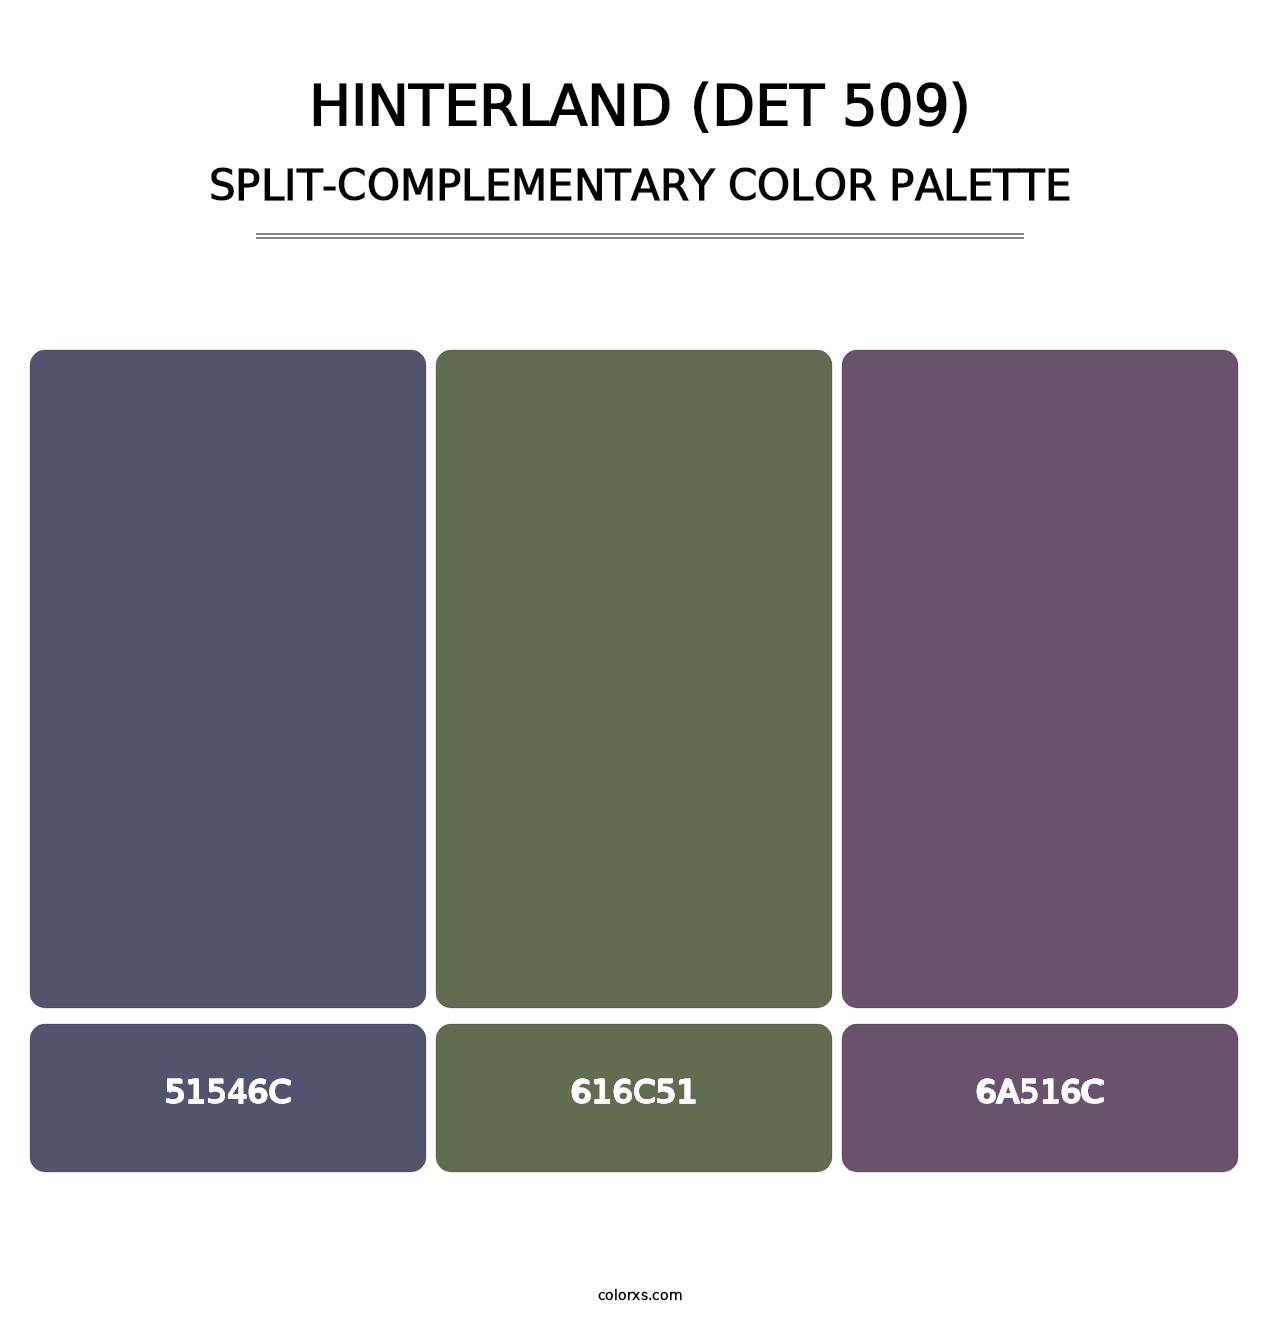 Hinterland (DET 509) - Split-Complementary Color Palette